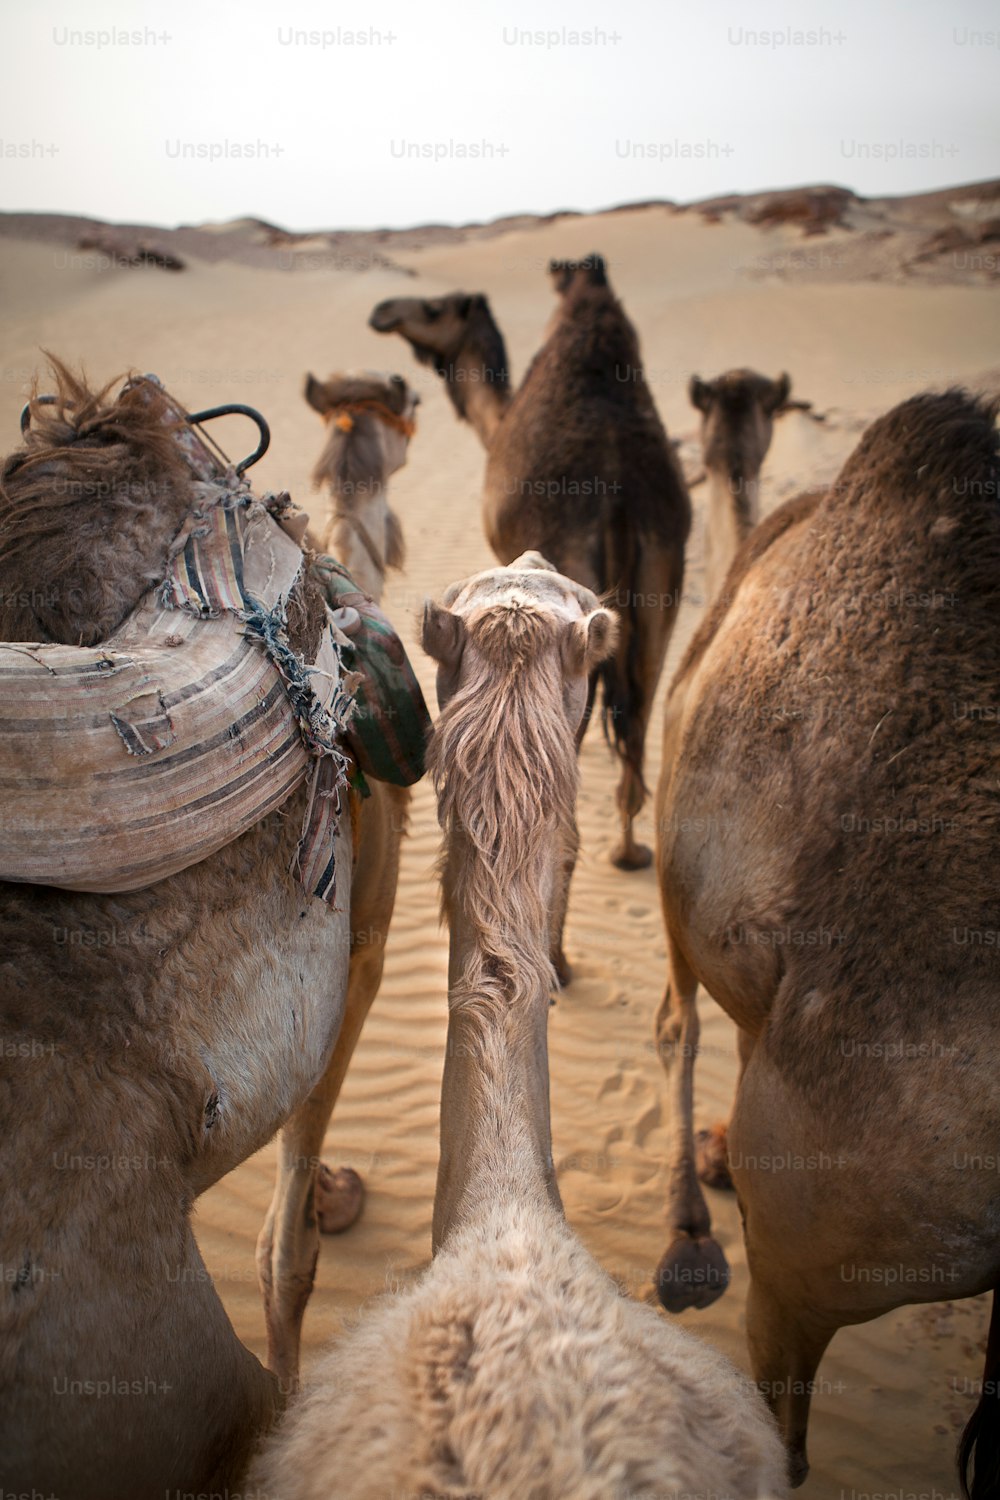 Camels walking through a desert